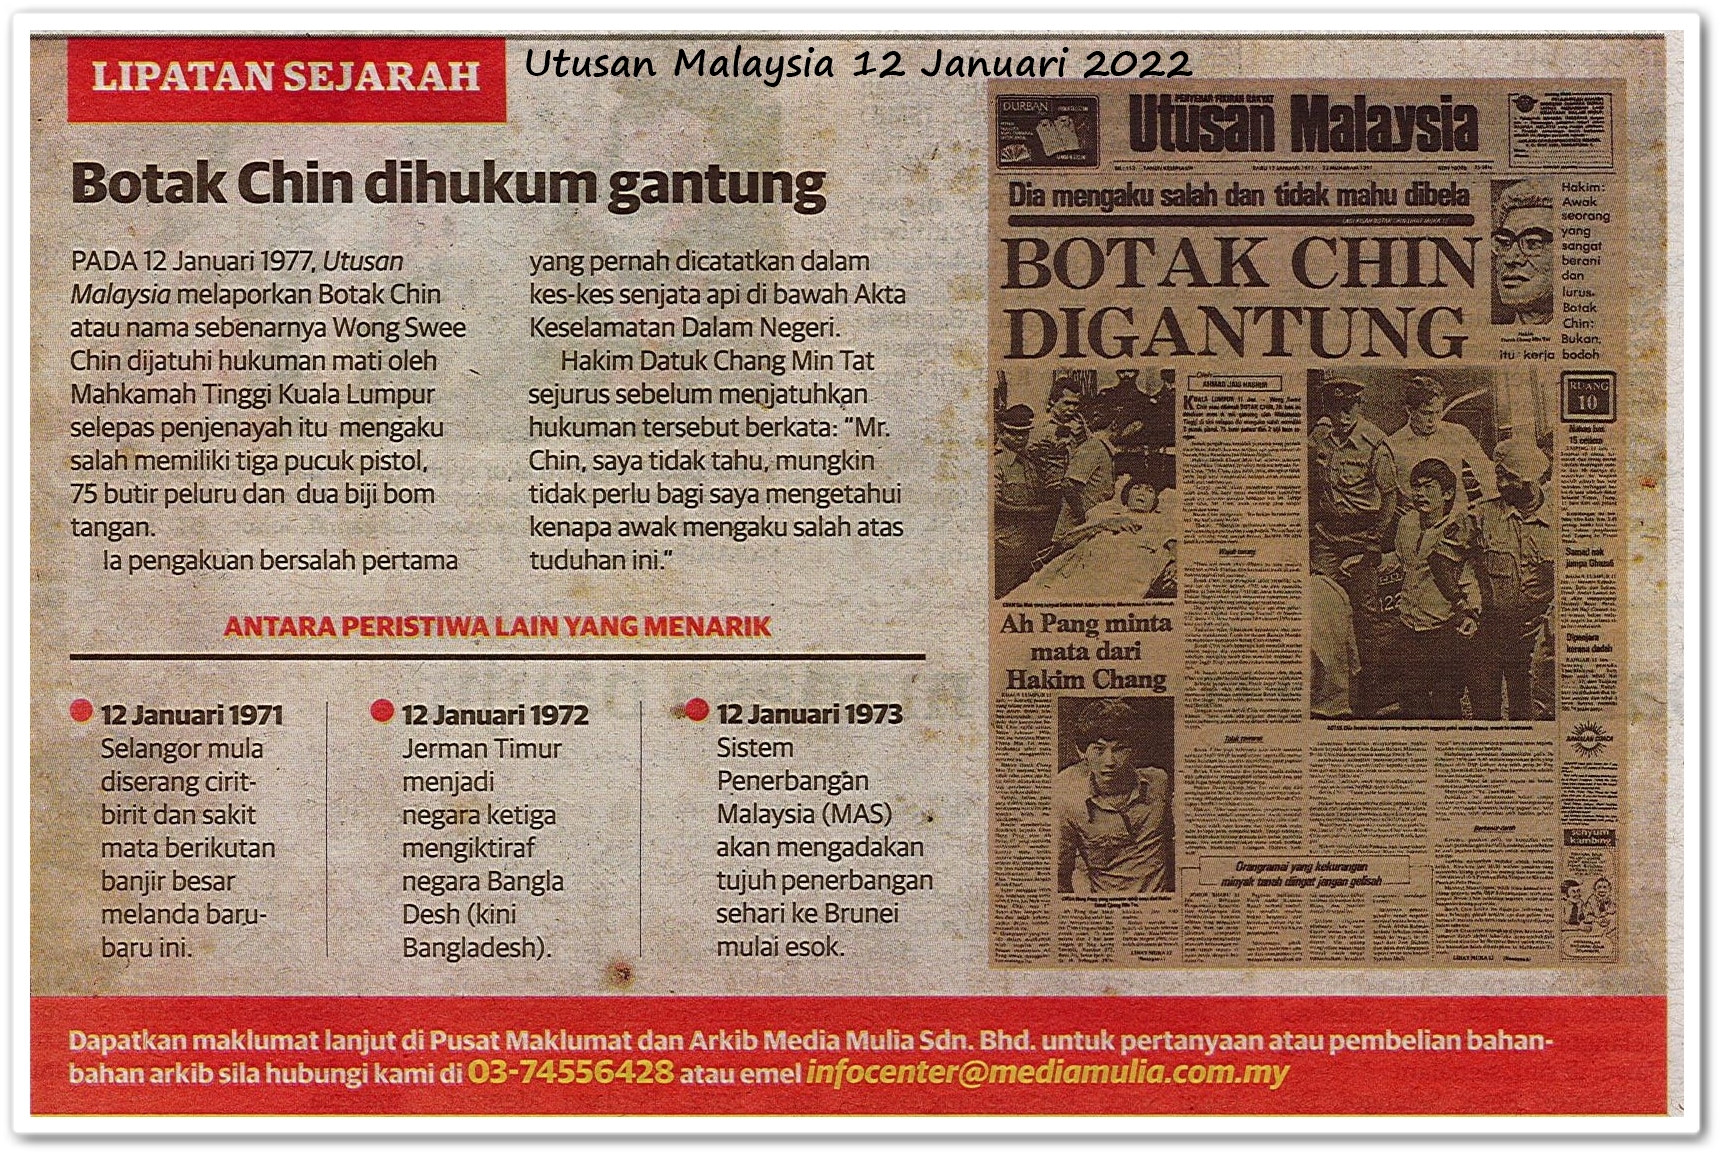 Lipatan sejarah 12 Januari - Keratan akhbar Utusan Malaysia 12 Januari 2022